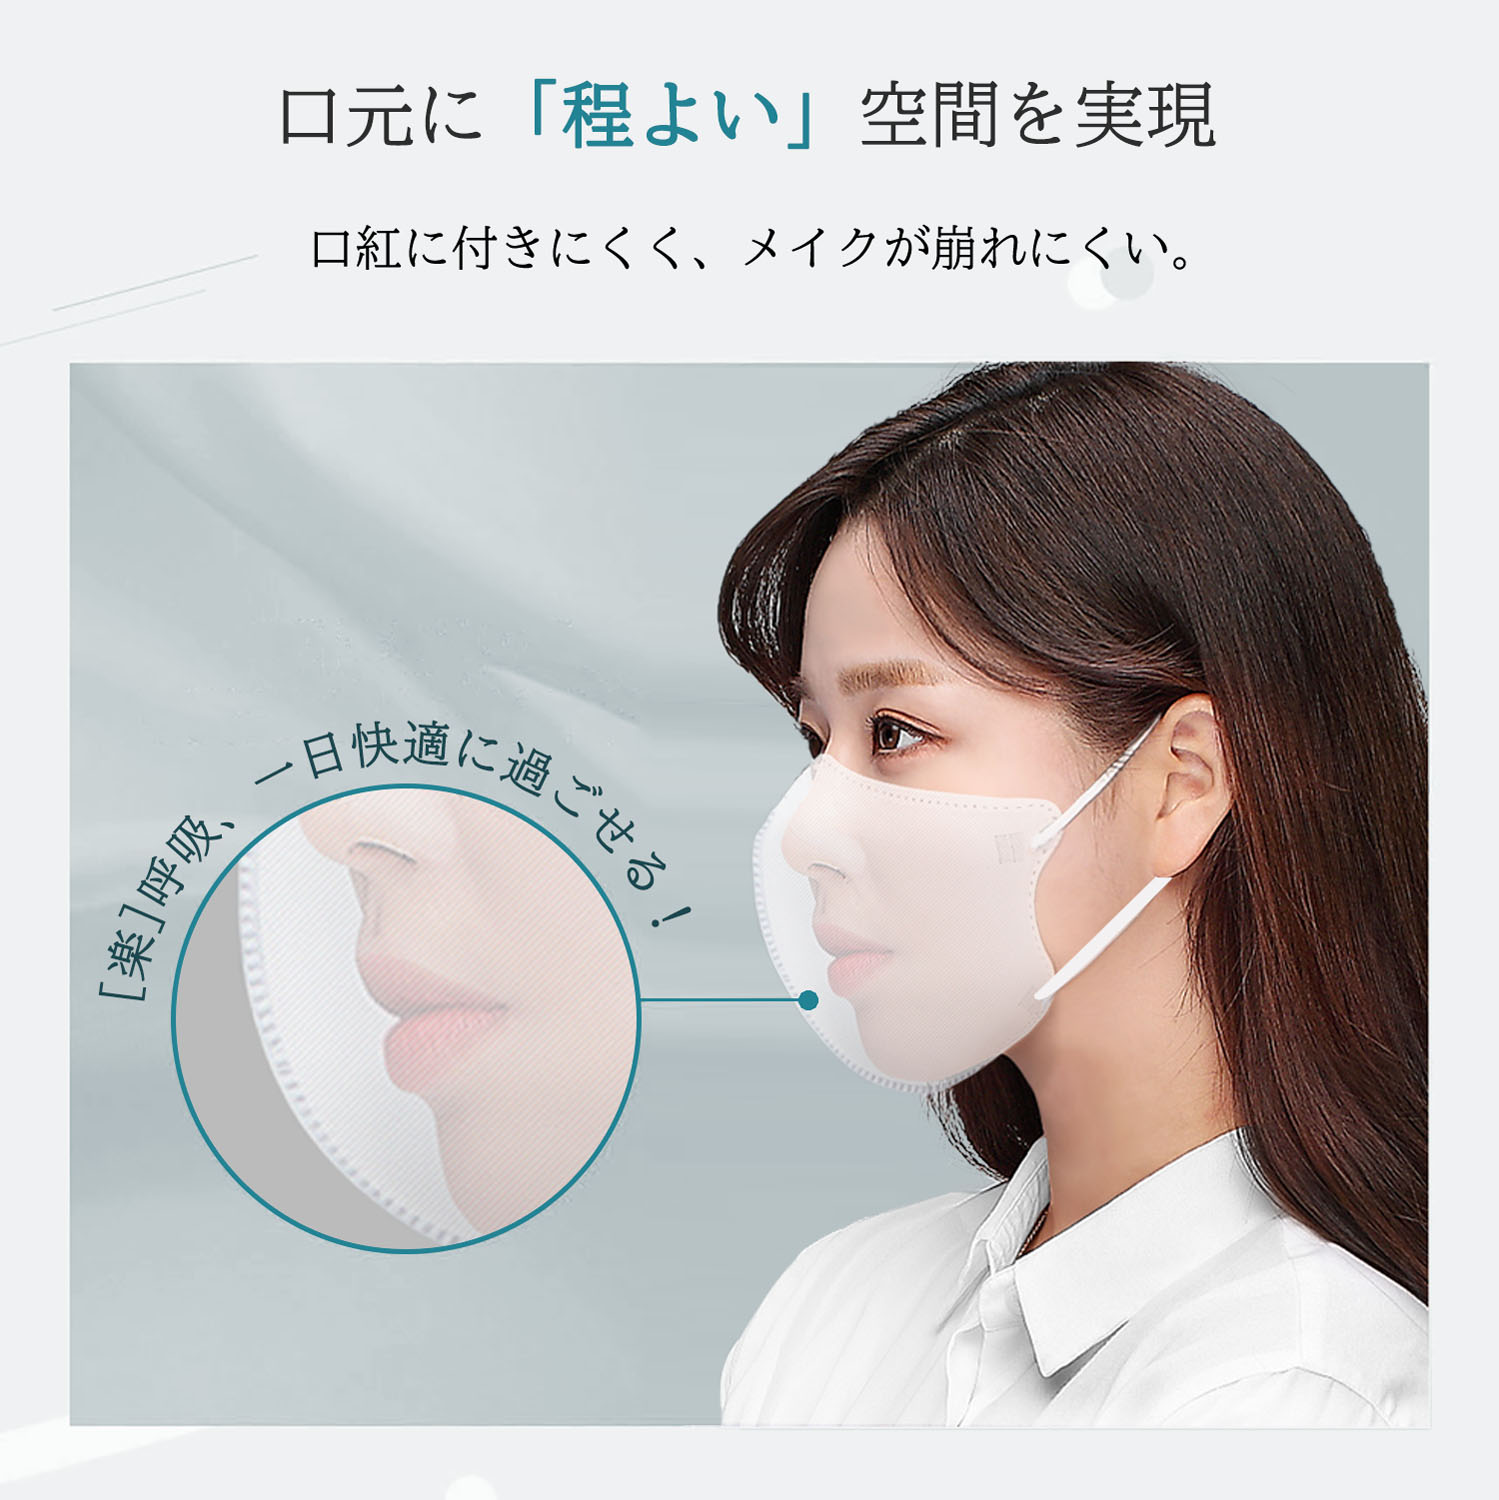 立体マスク 3D 不織布 日本製 カラー くちばし 20枚(10枚入*2袋) 小顔 使い捨て メガネが曇りにくい 呼吸しやすい 口紅に付かない 耳が痛くならない 熱中症対策917535